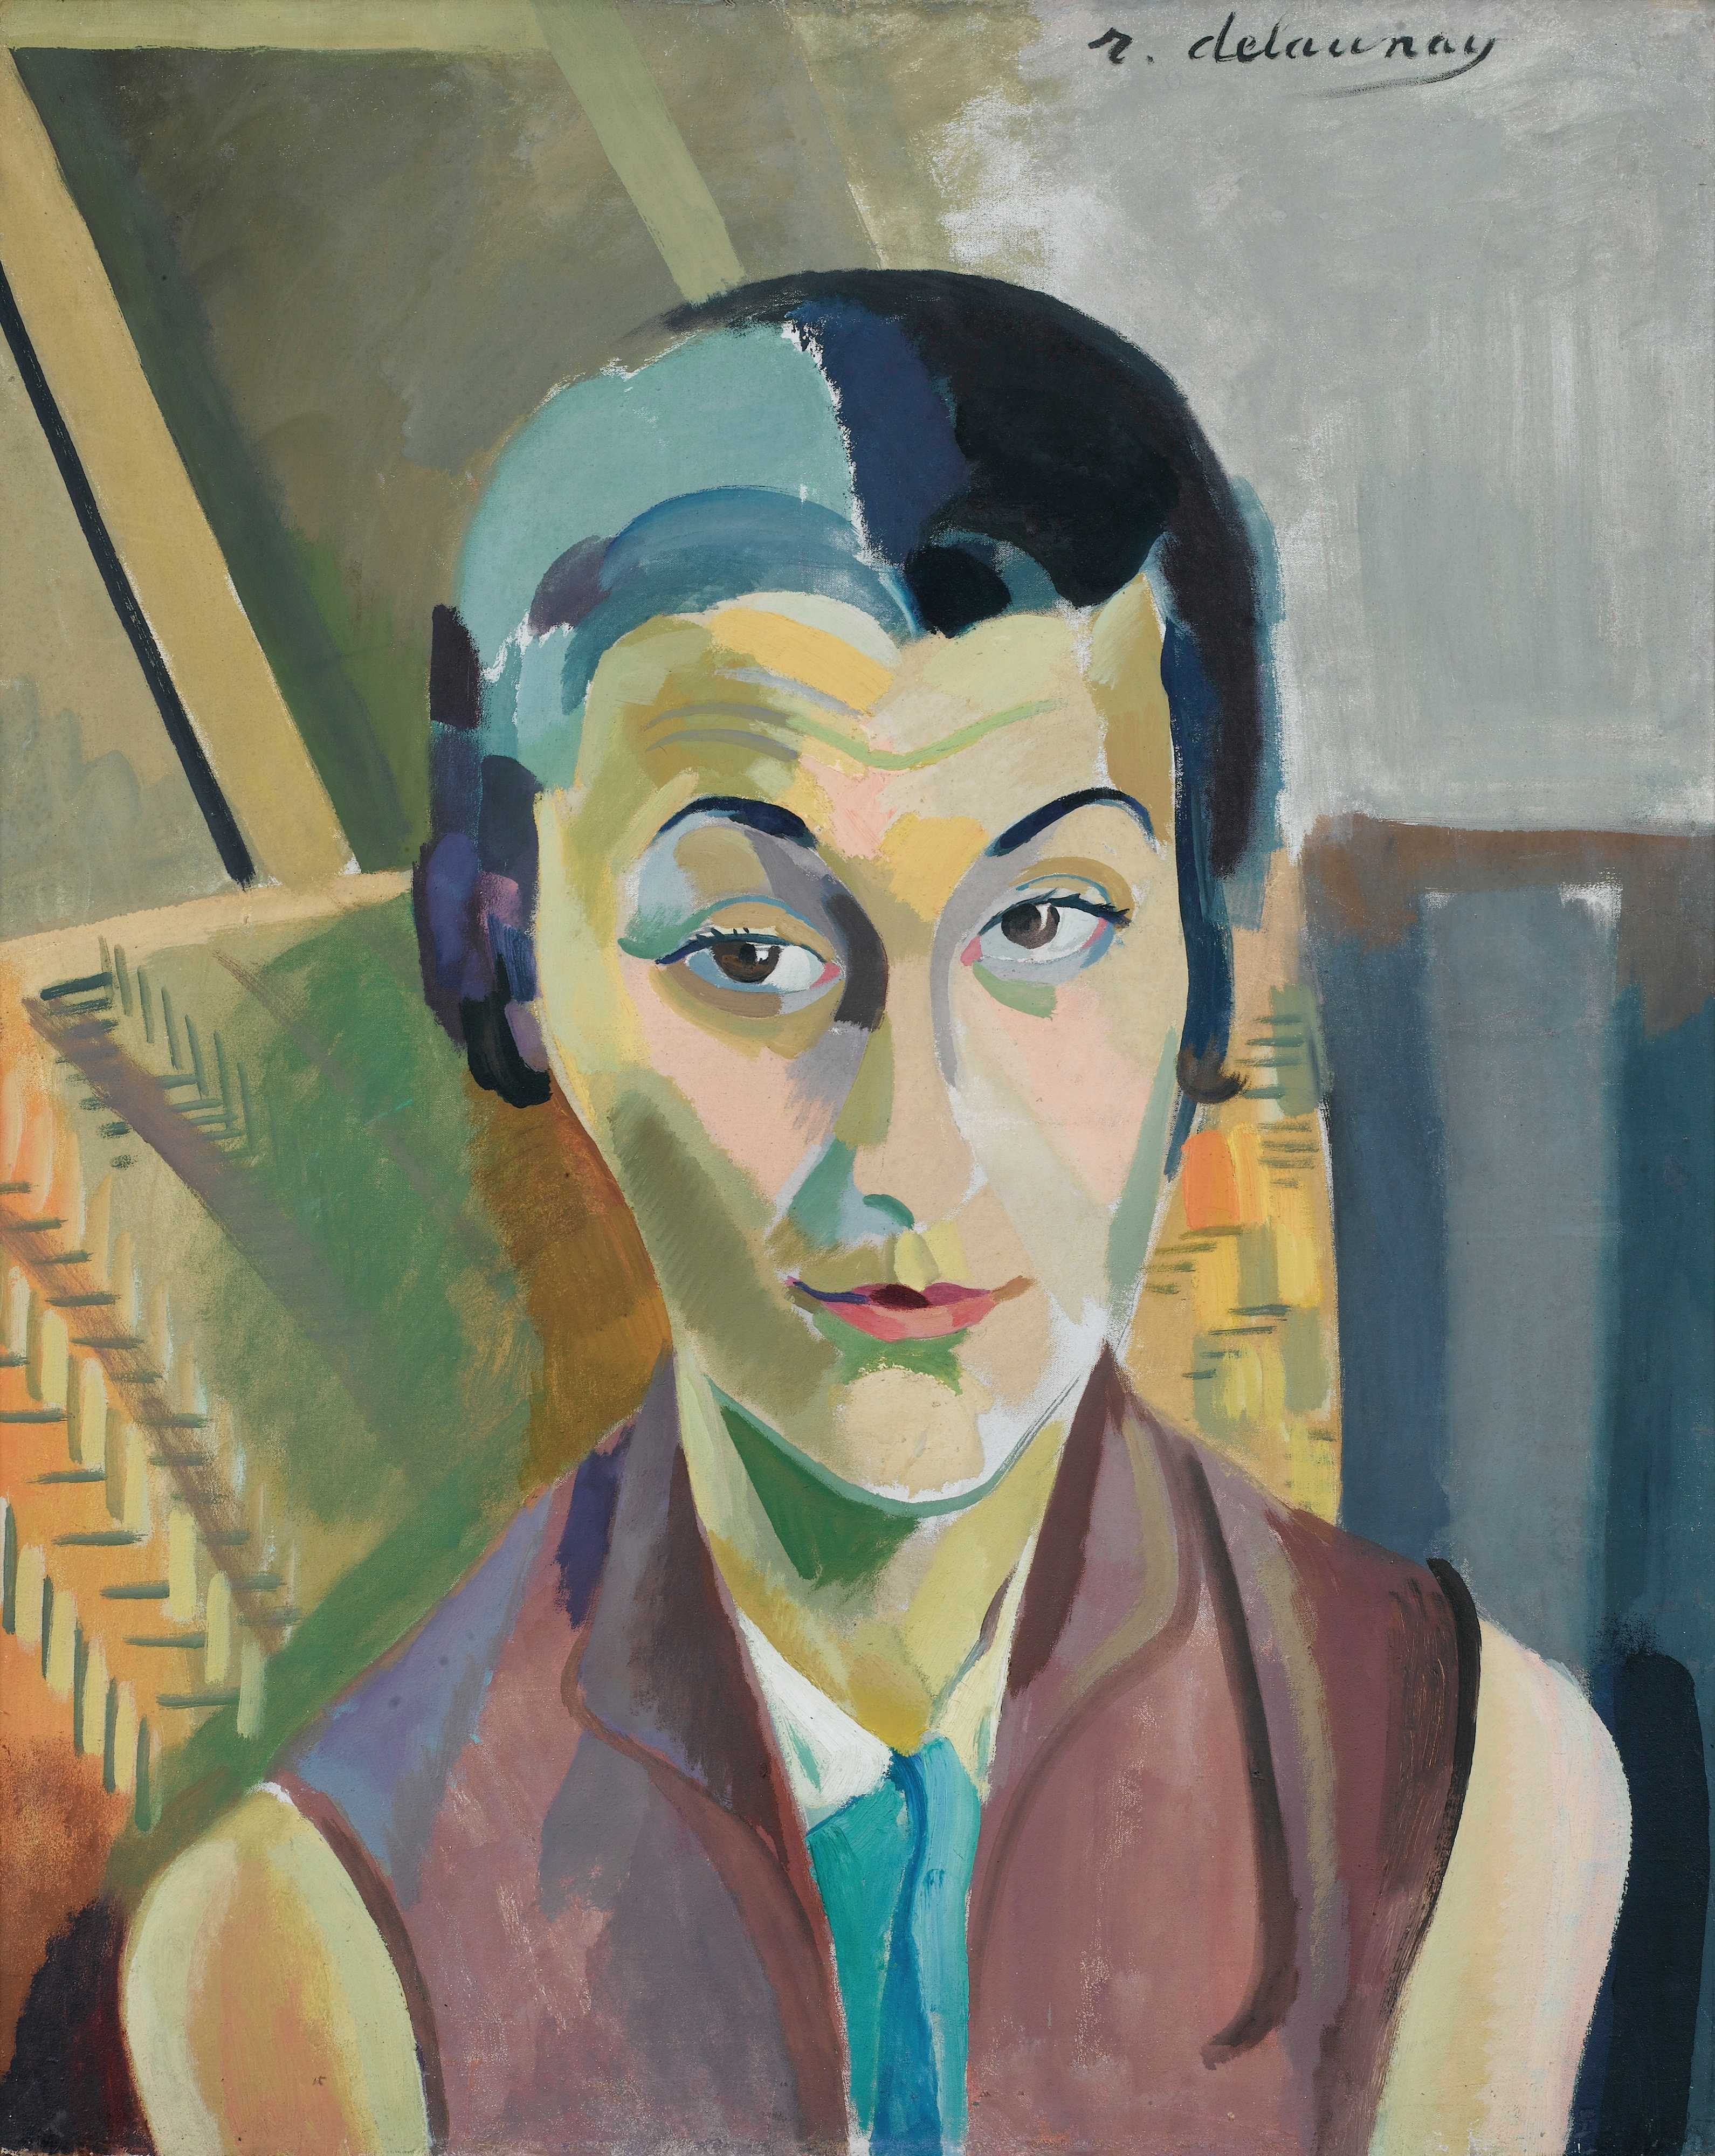 Find out more about Robert Delaunay - Portrait De Maria Lani